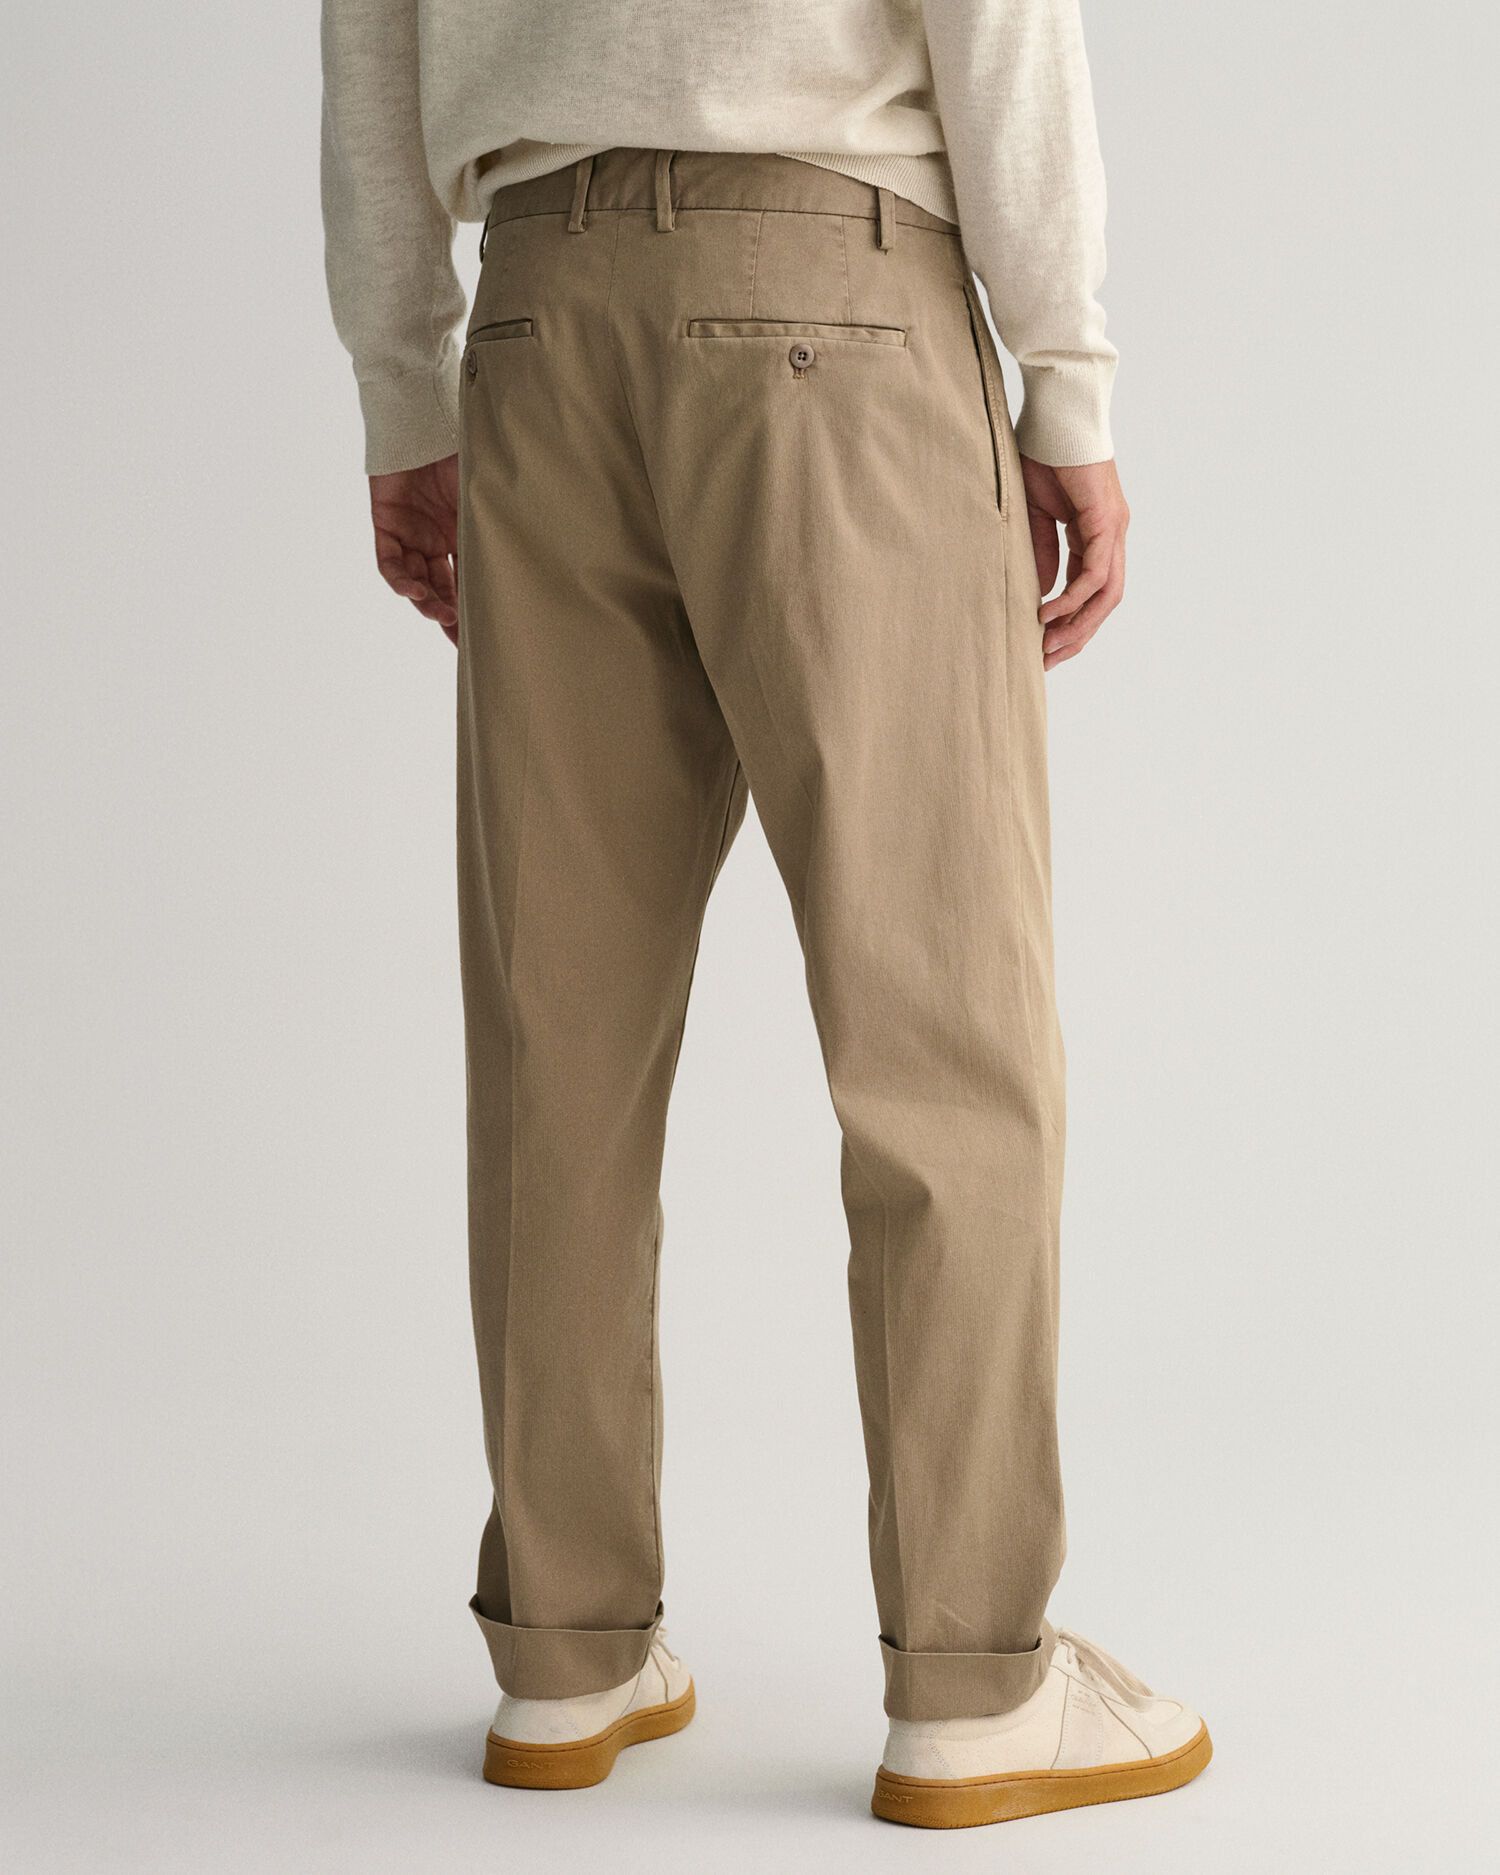 Men's Vintage GURKHA Pants Cotton Suit Pants Casual High Waist Straight  Trousers | eBay